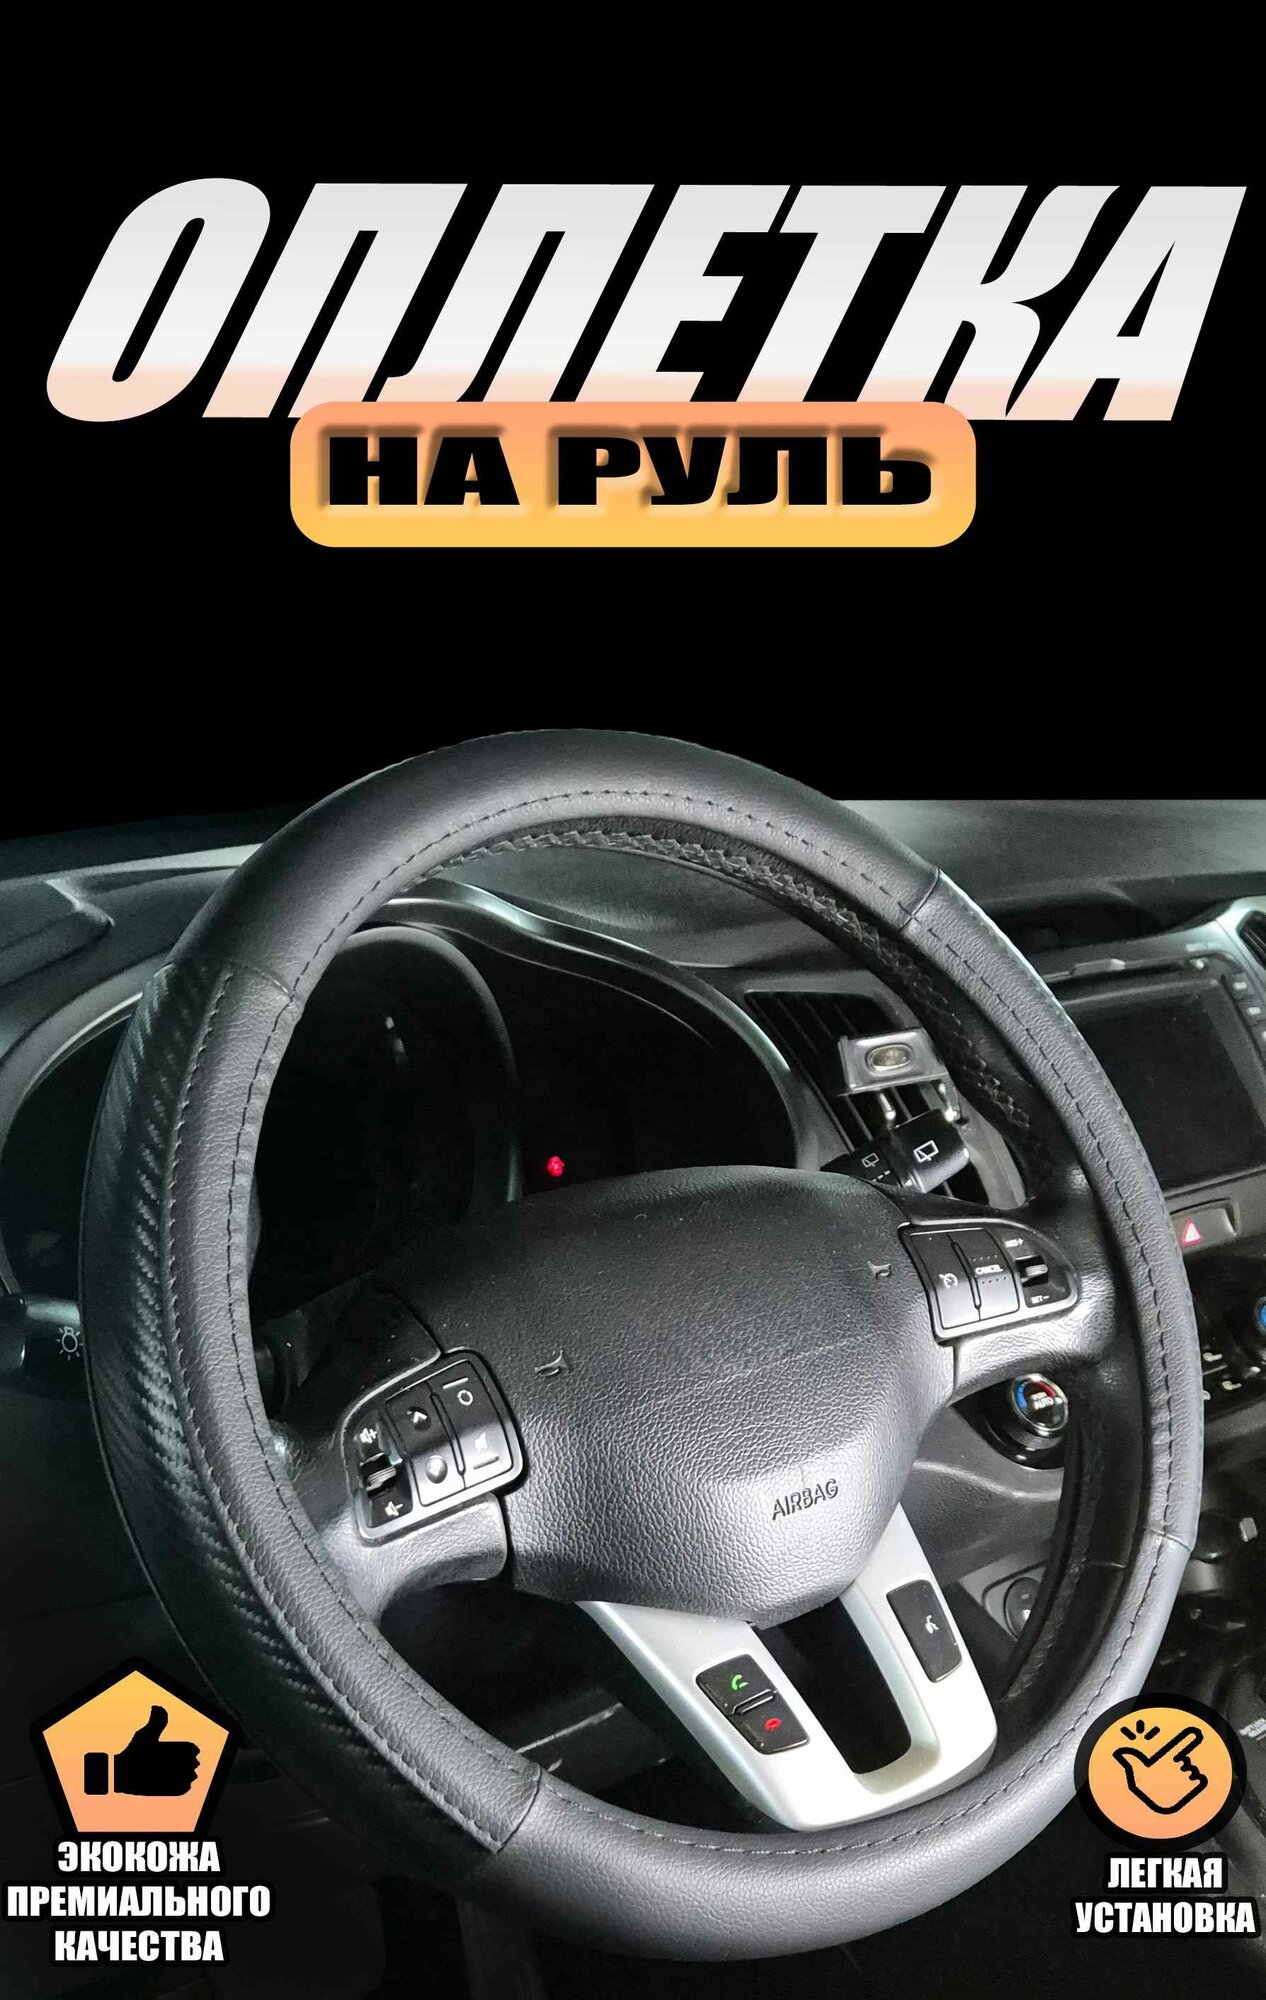 Оплетка (чехол) на руль Хонда Цивик (2013 - 2017) купе / Honda Civic, экокожа и карбон (премиального качества), Черный